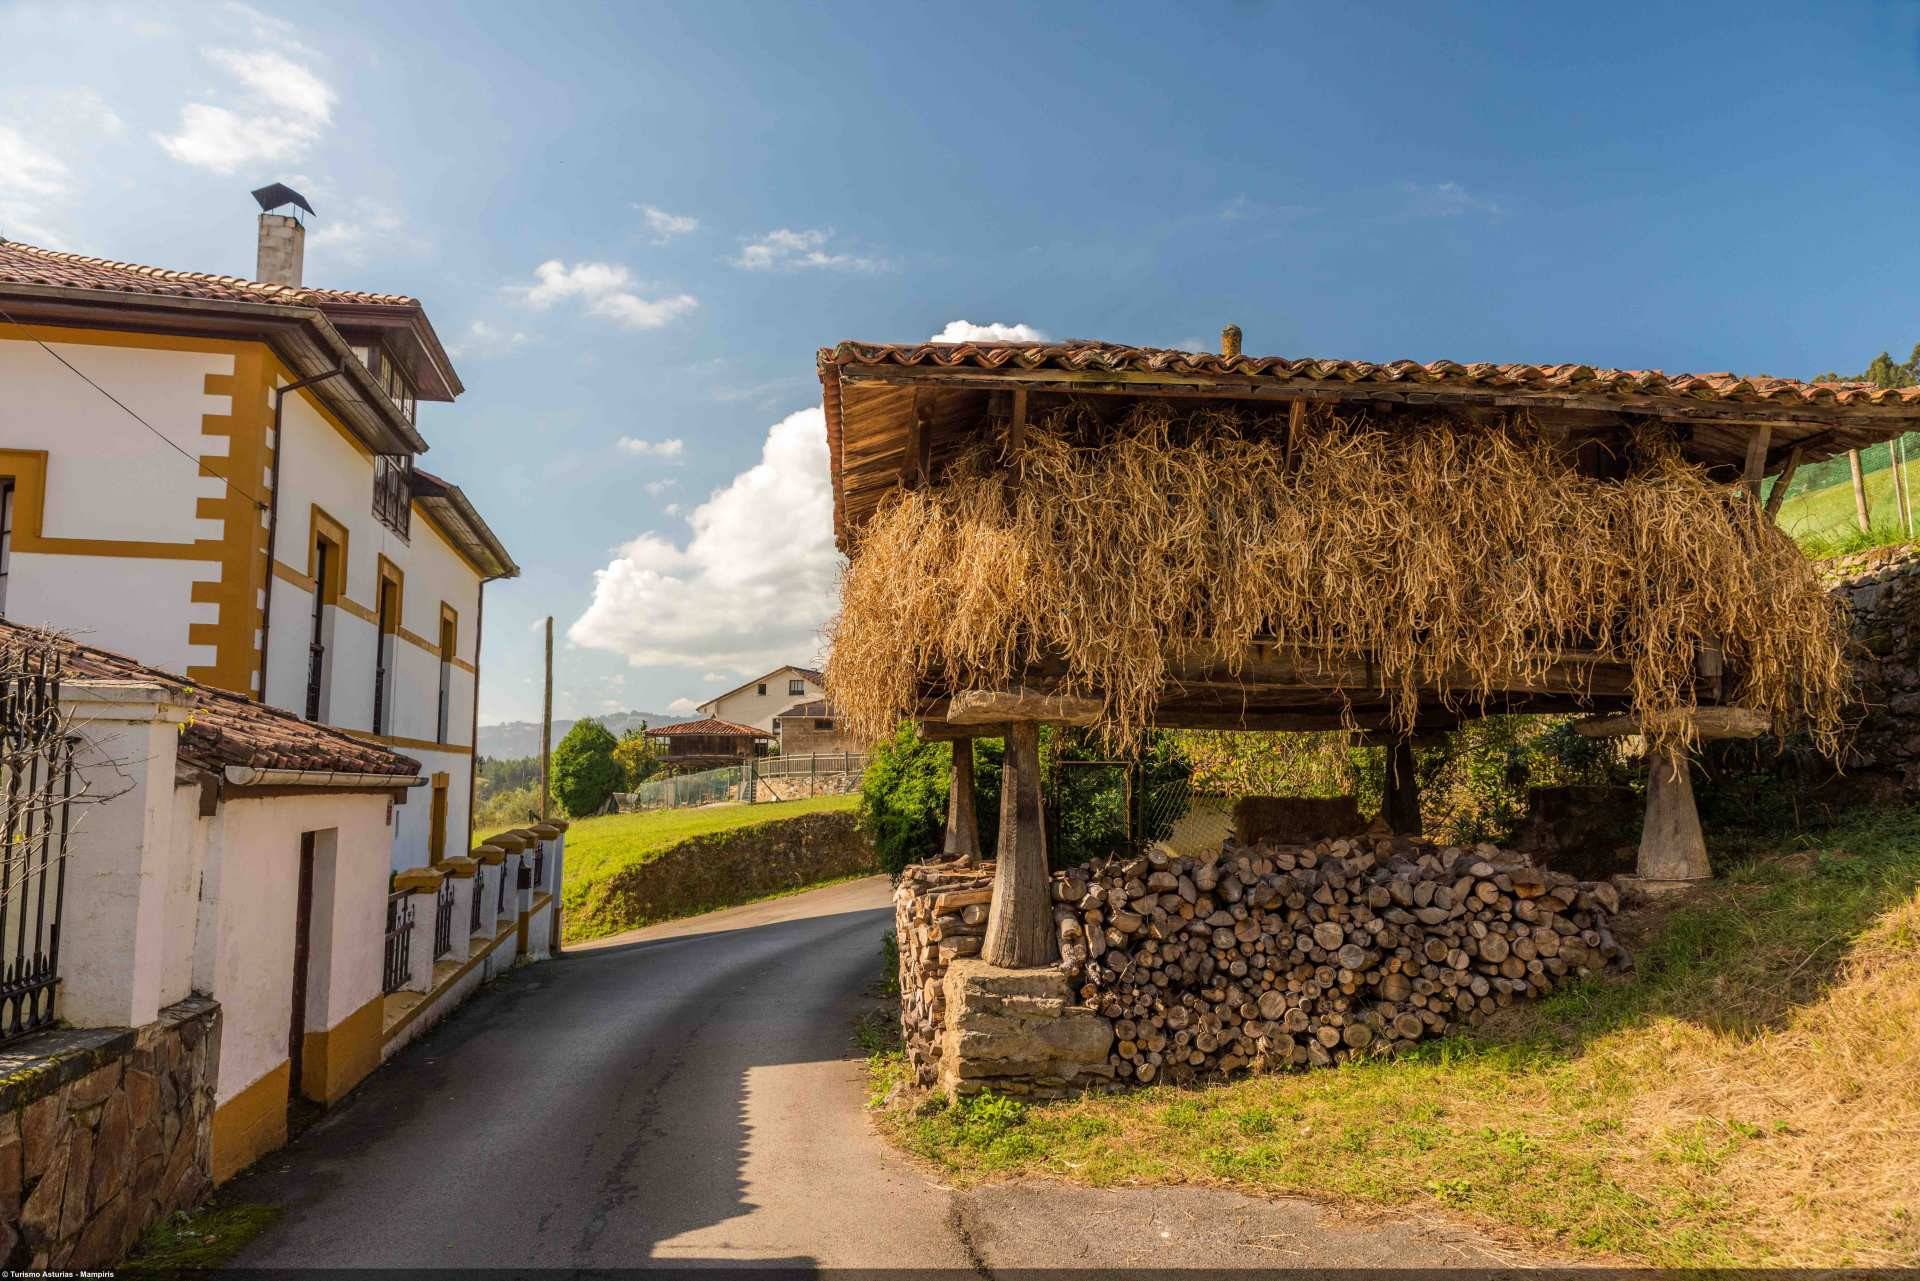 La mayor zona de producción de la faba de Asturias se concentra en Pravia y Grado. ©Mampiris. Turismo de Asturias.